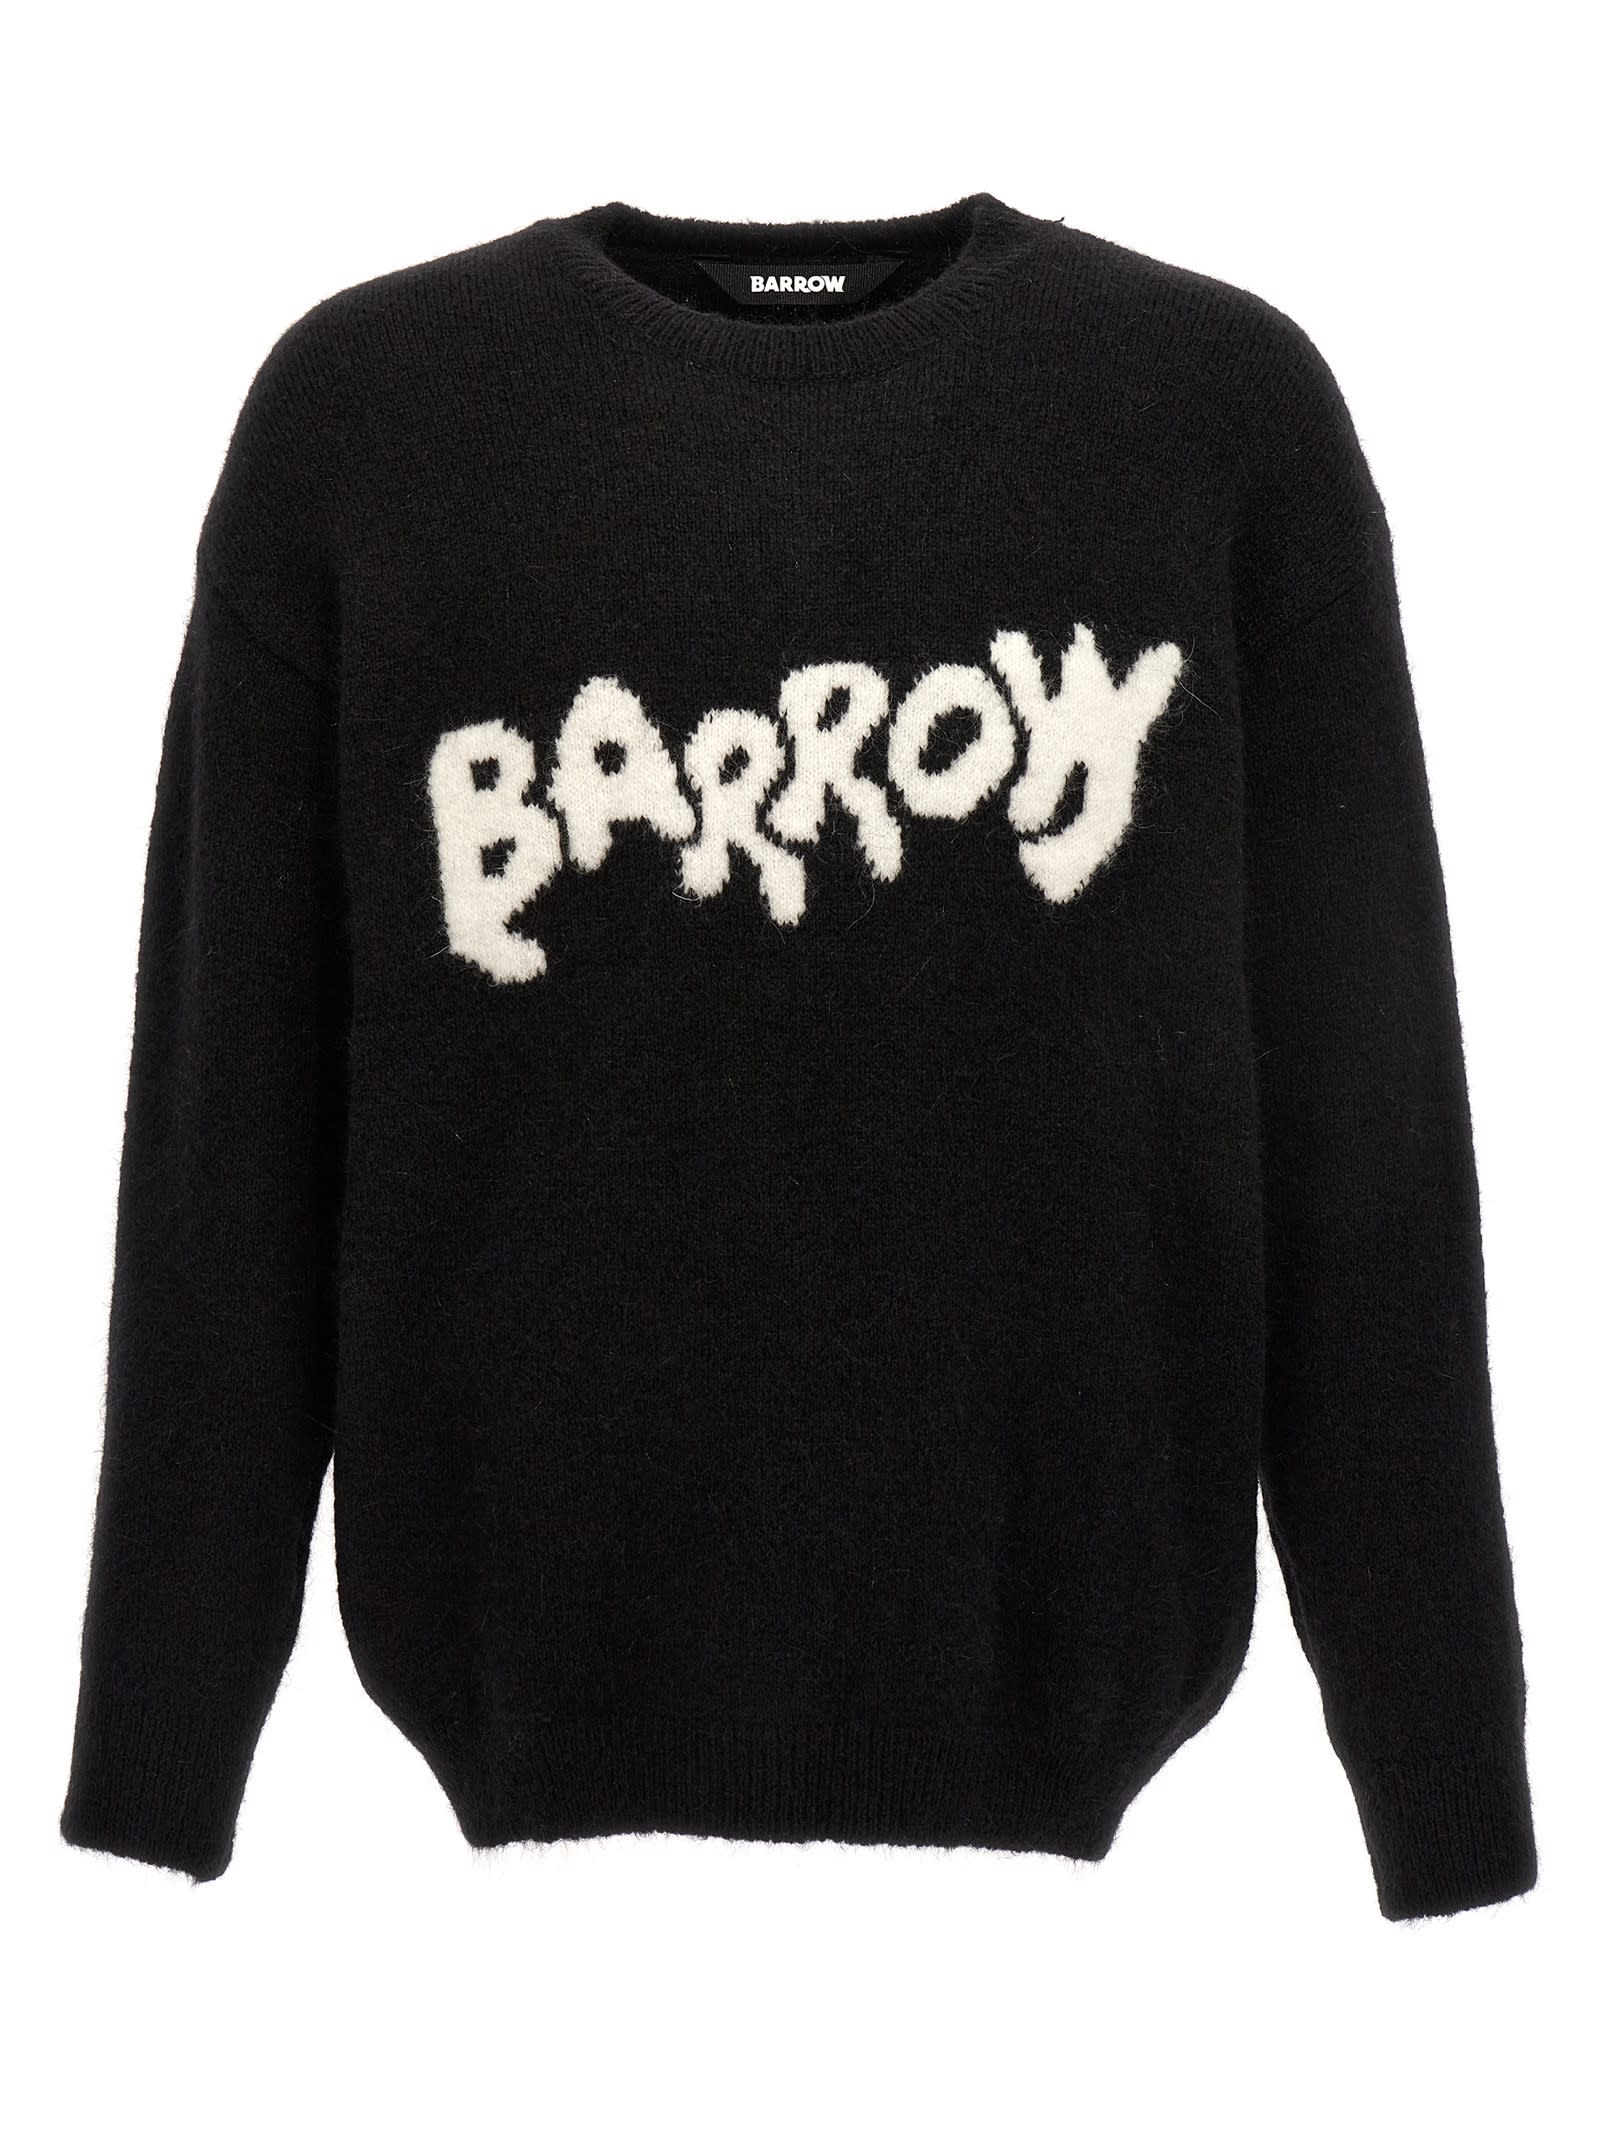 Barrow Logo Sweater In Black